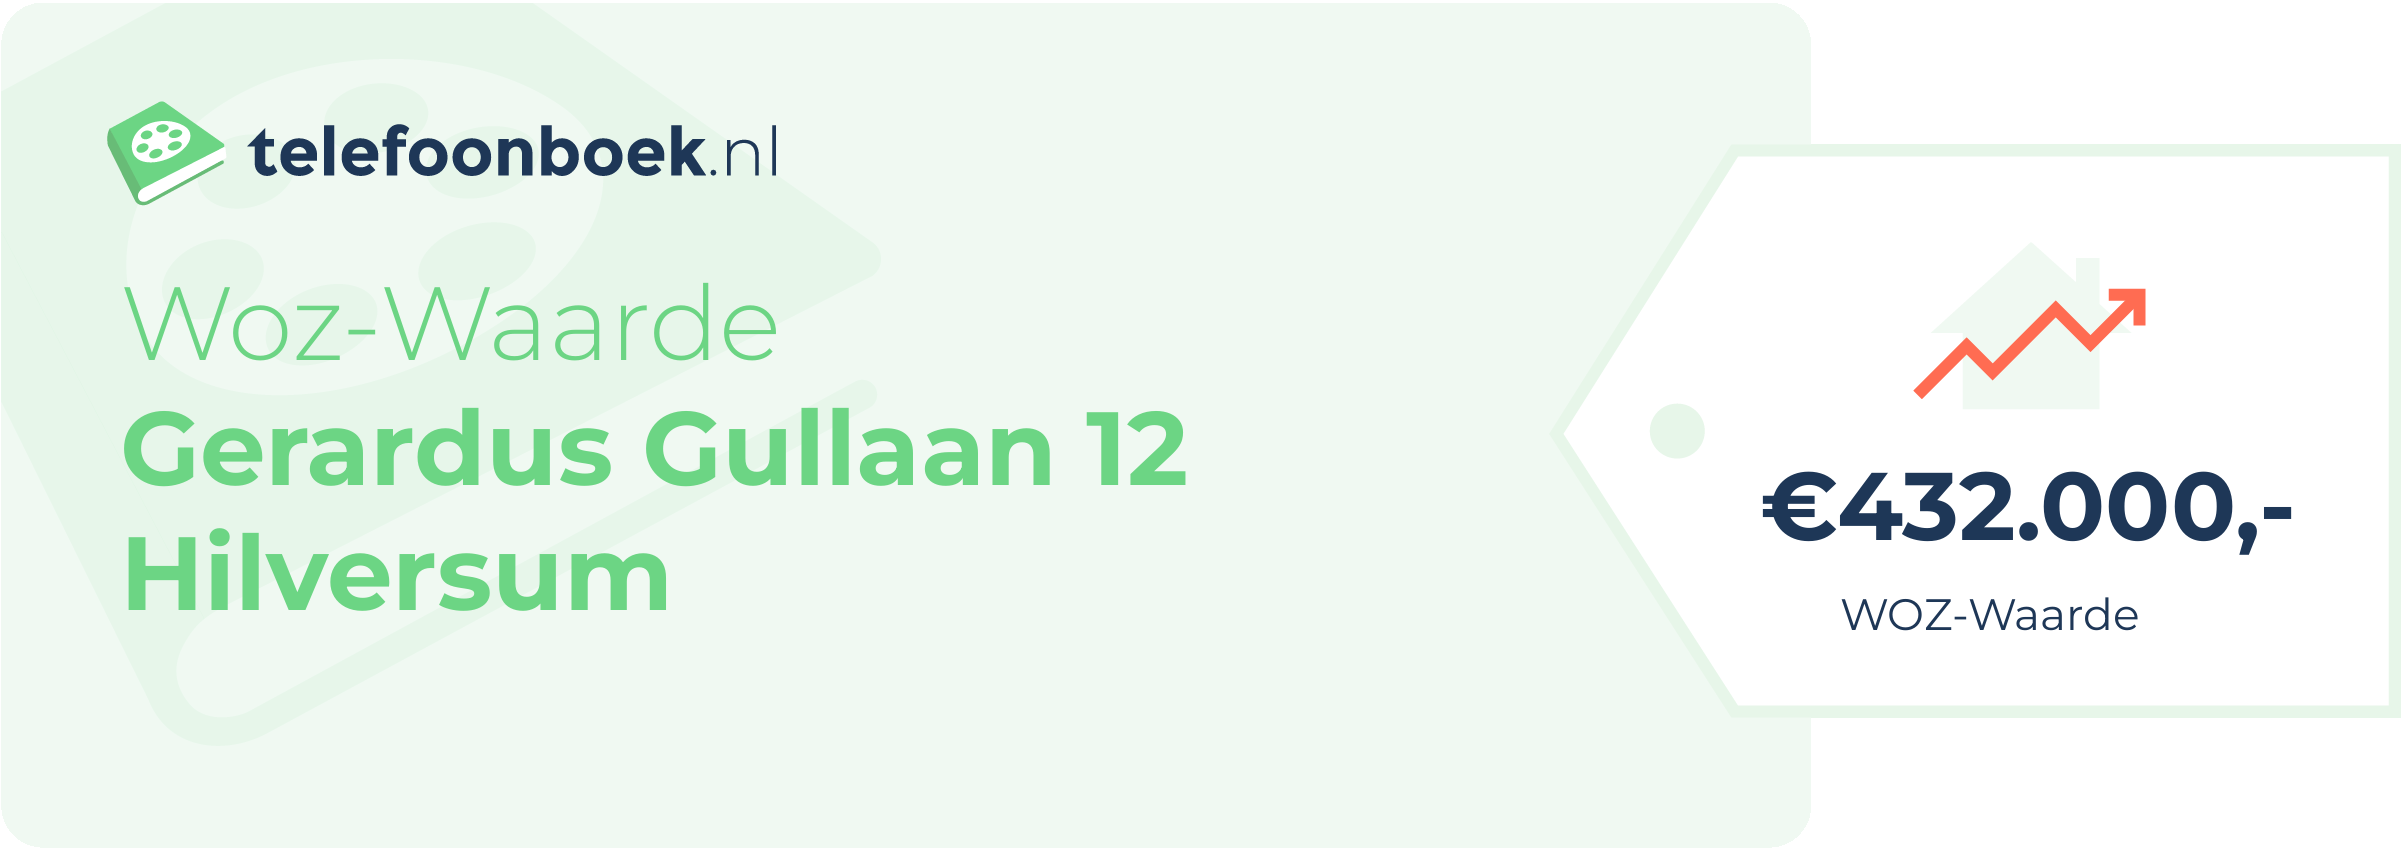 WOZ-waarde Gerardus Gullaan 12 Hilversum